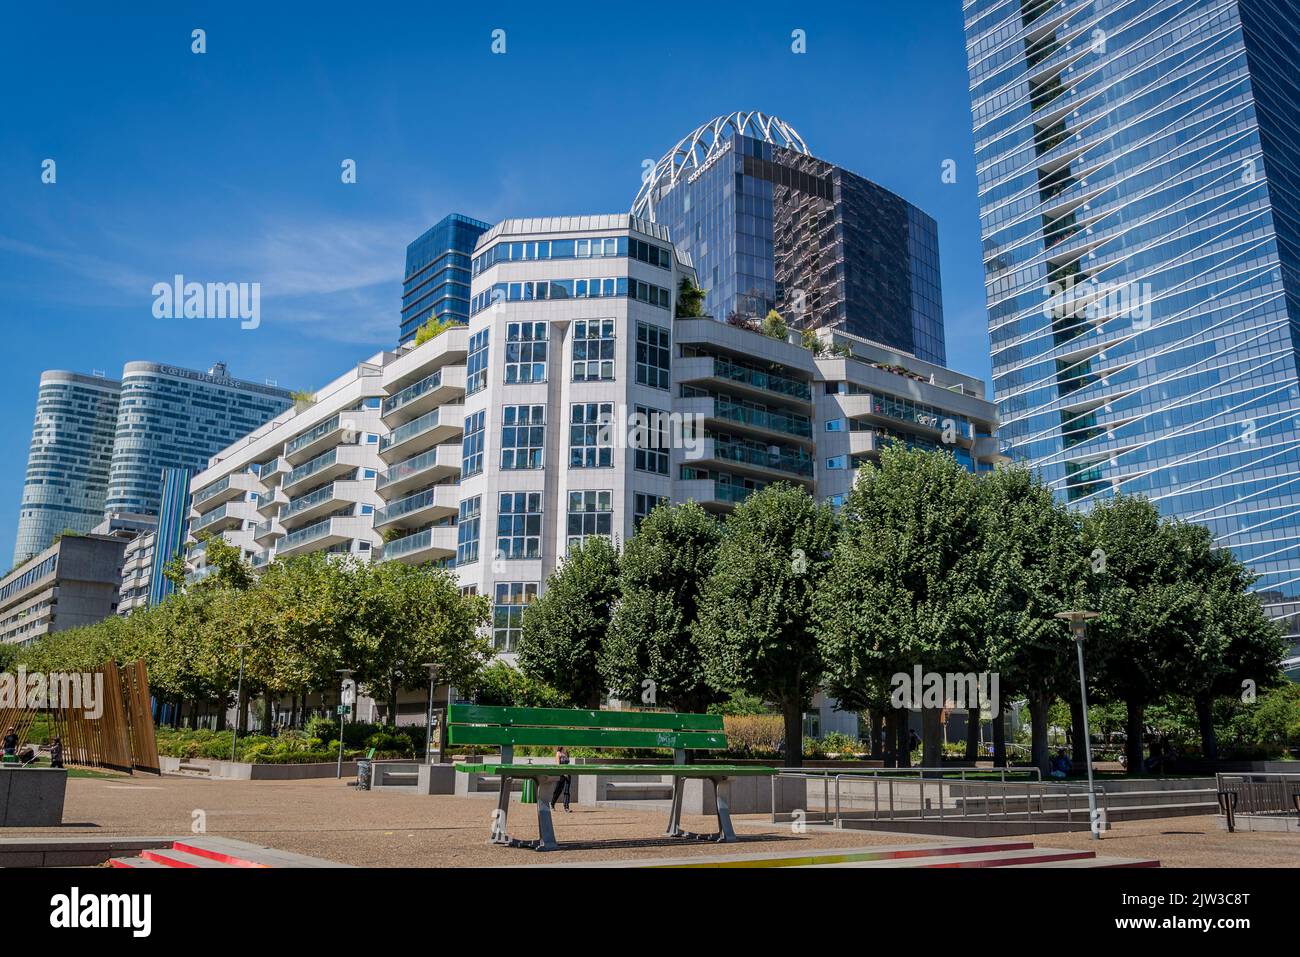 Großes grünes Bankkunstwerk, La Defense, ein großes Geschäftsviertel, 3 Kilometer westlich der Stadtgrenze von Paris, Frankreich Stockfoto